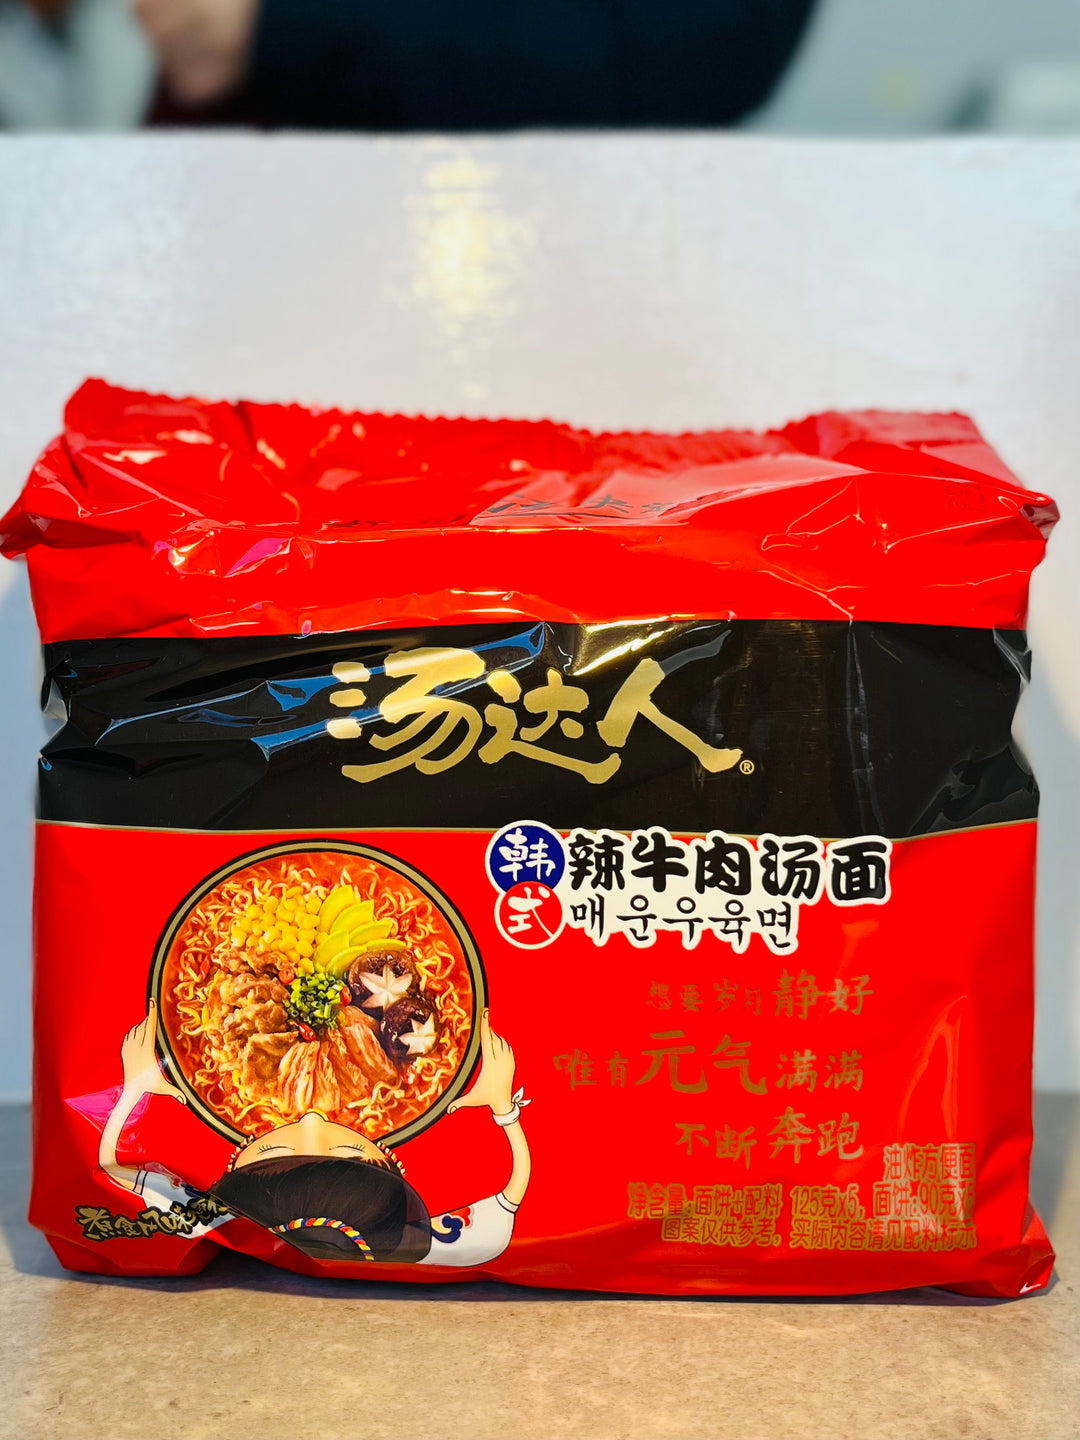 统一汤达人韩式牛肉汤面5pcks Unif Korean Style Beef Noodle